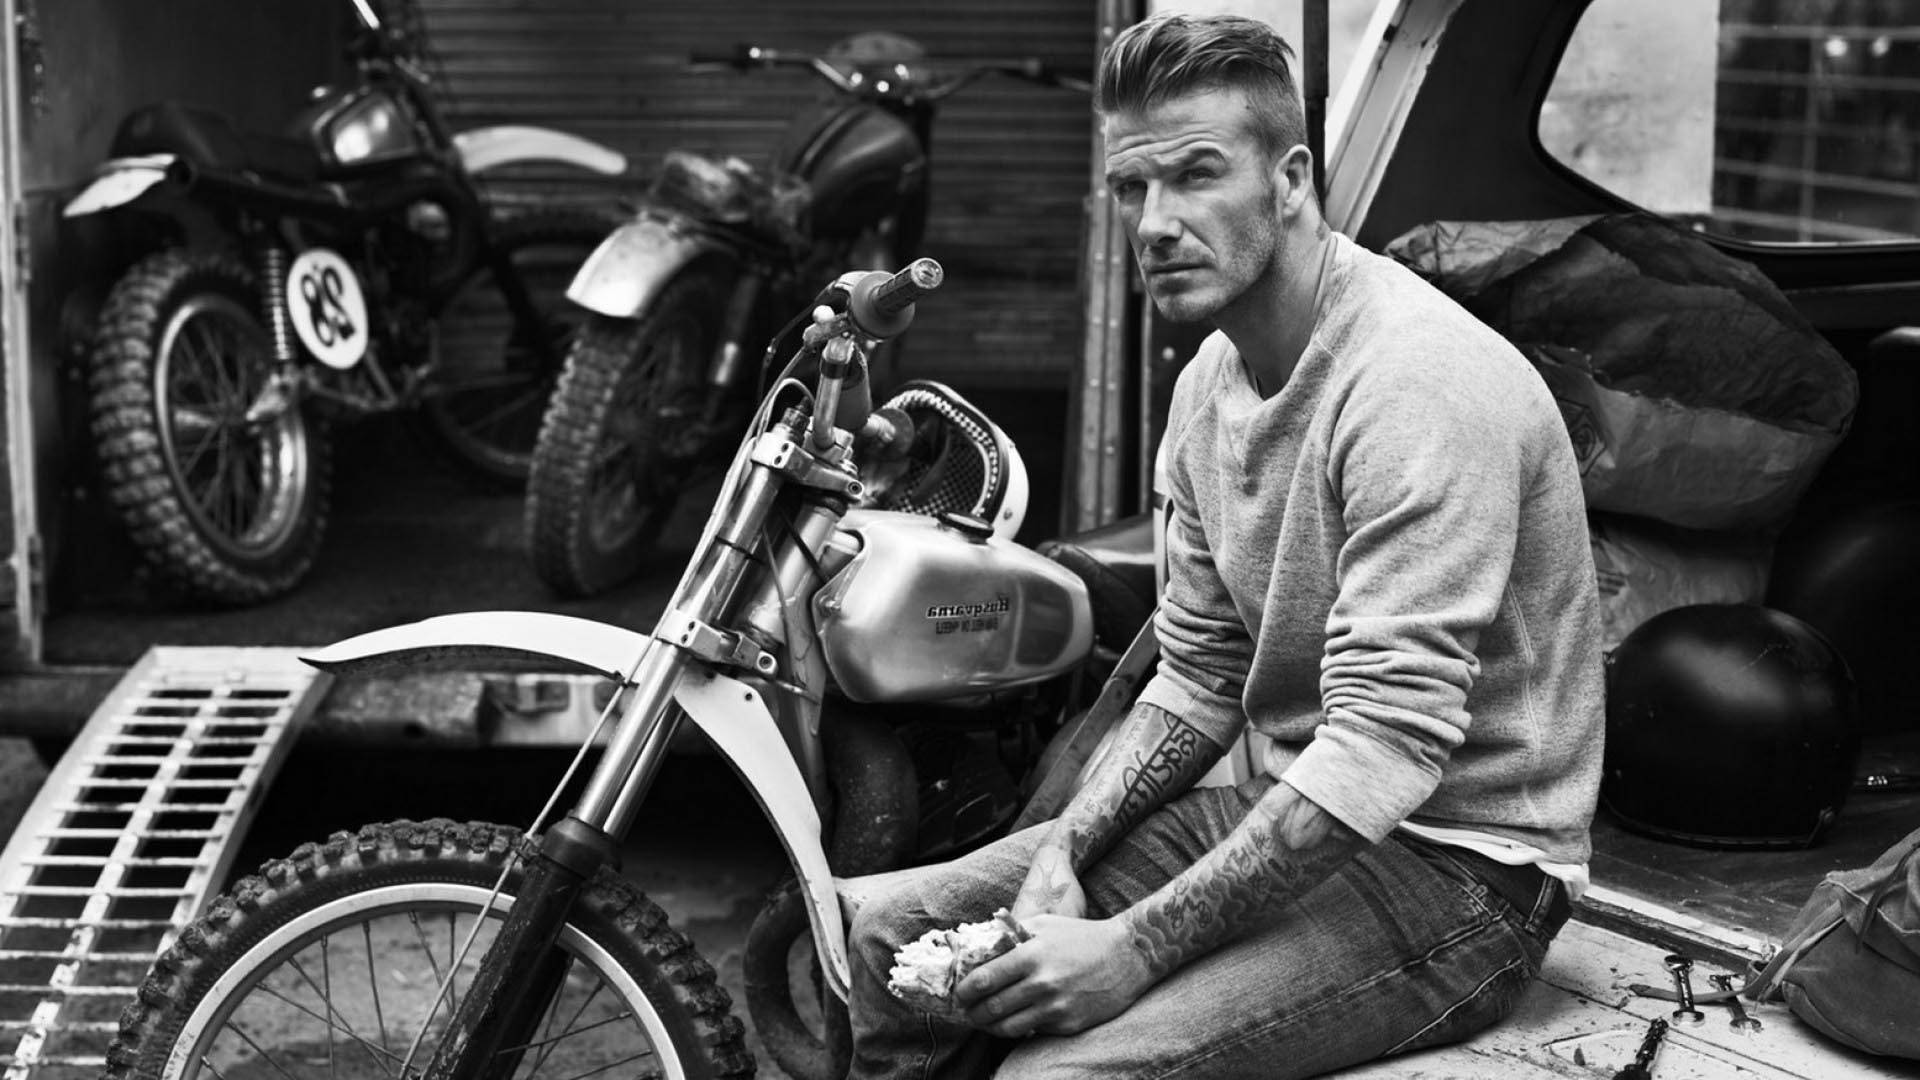 David Beckham cruises on his motorcycle Wallpaper